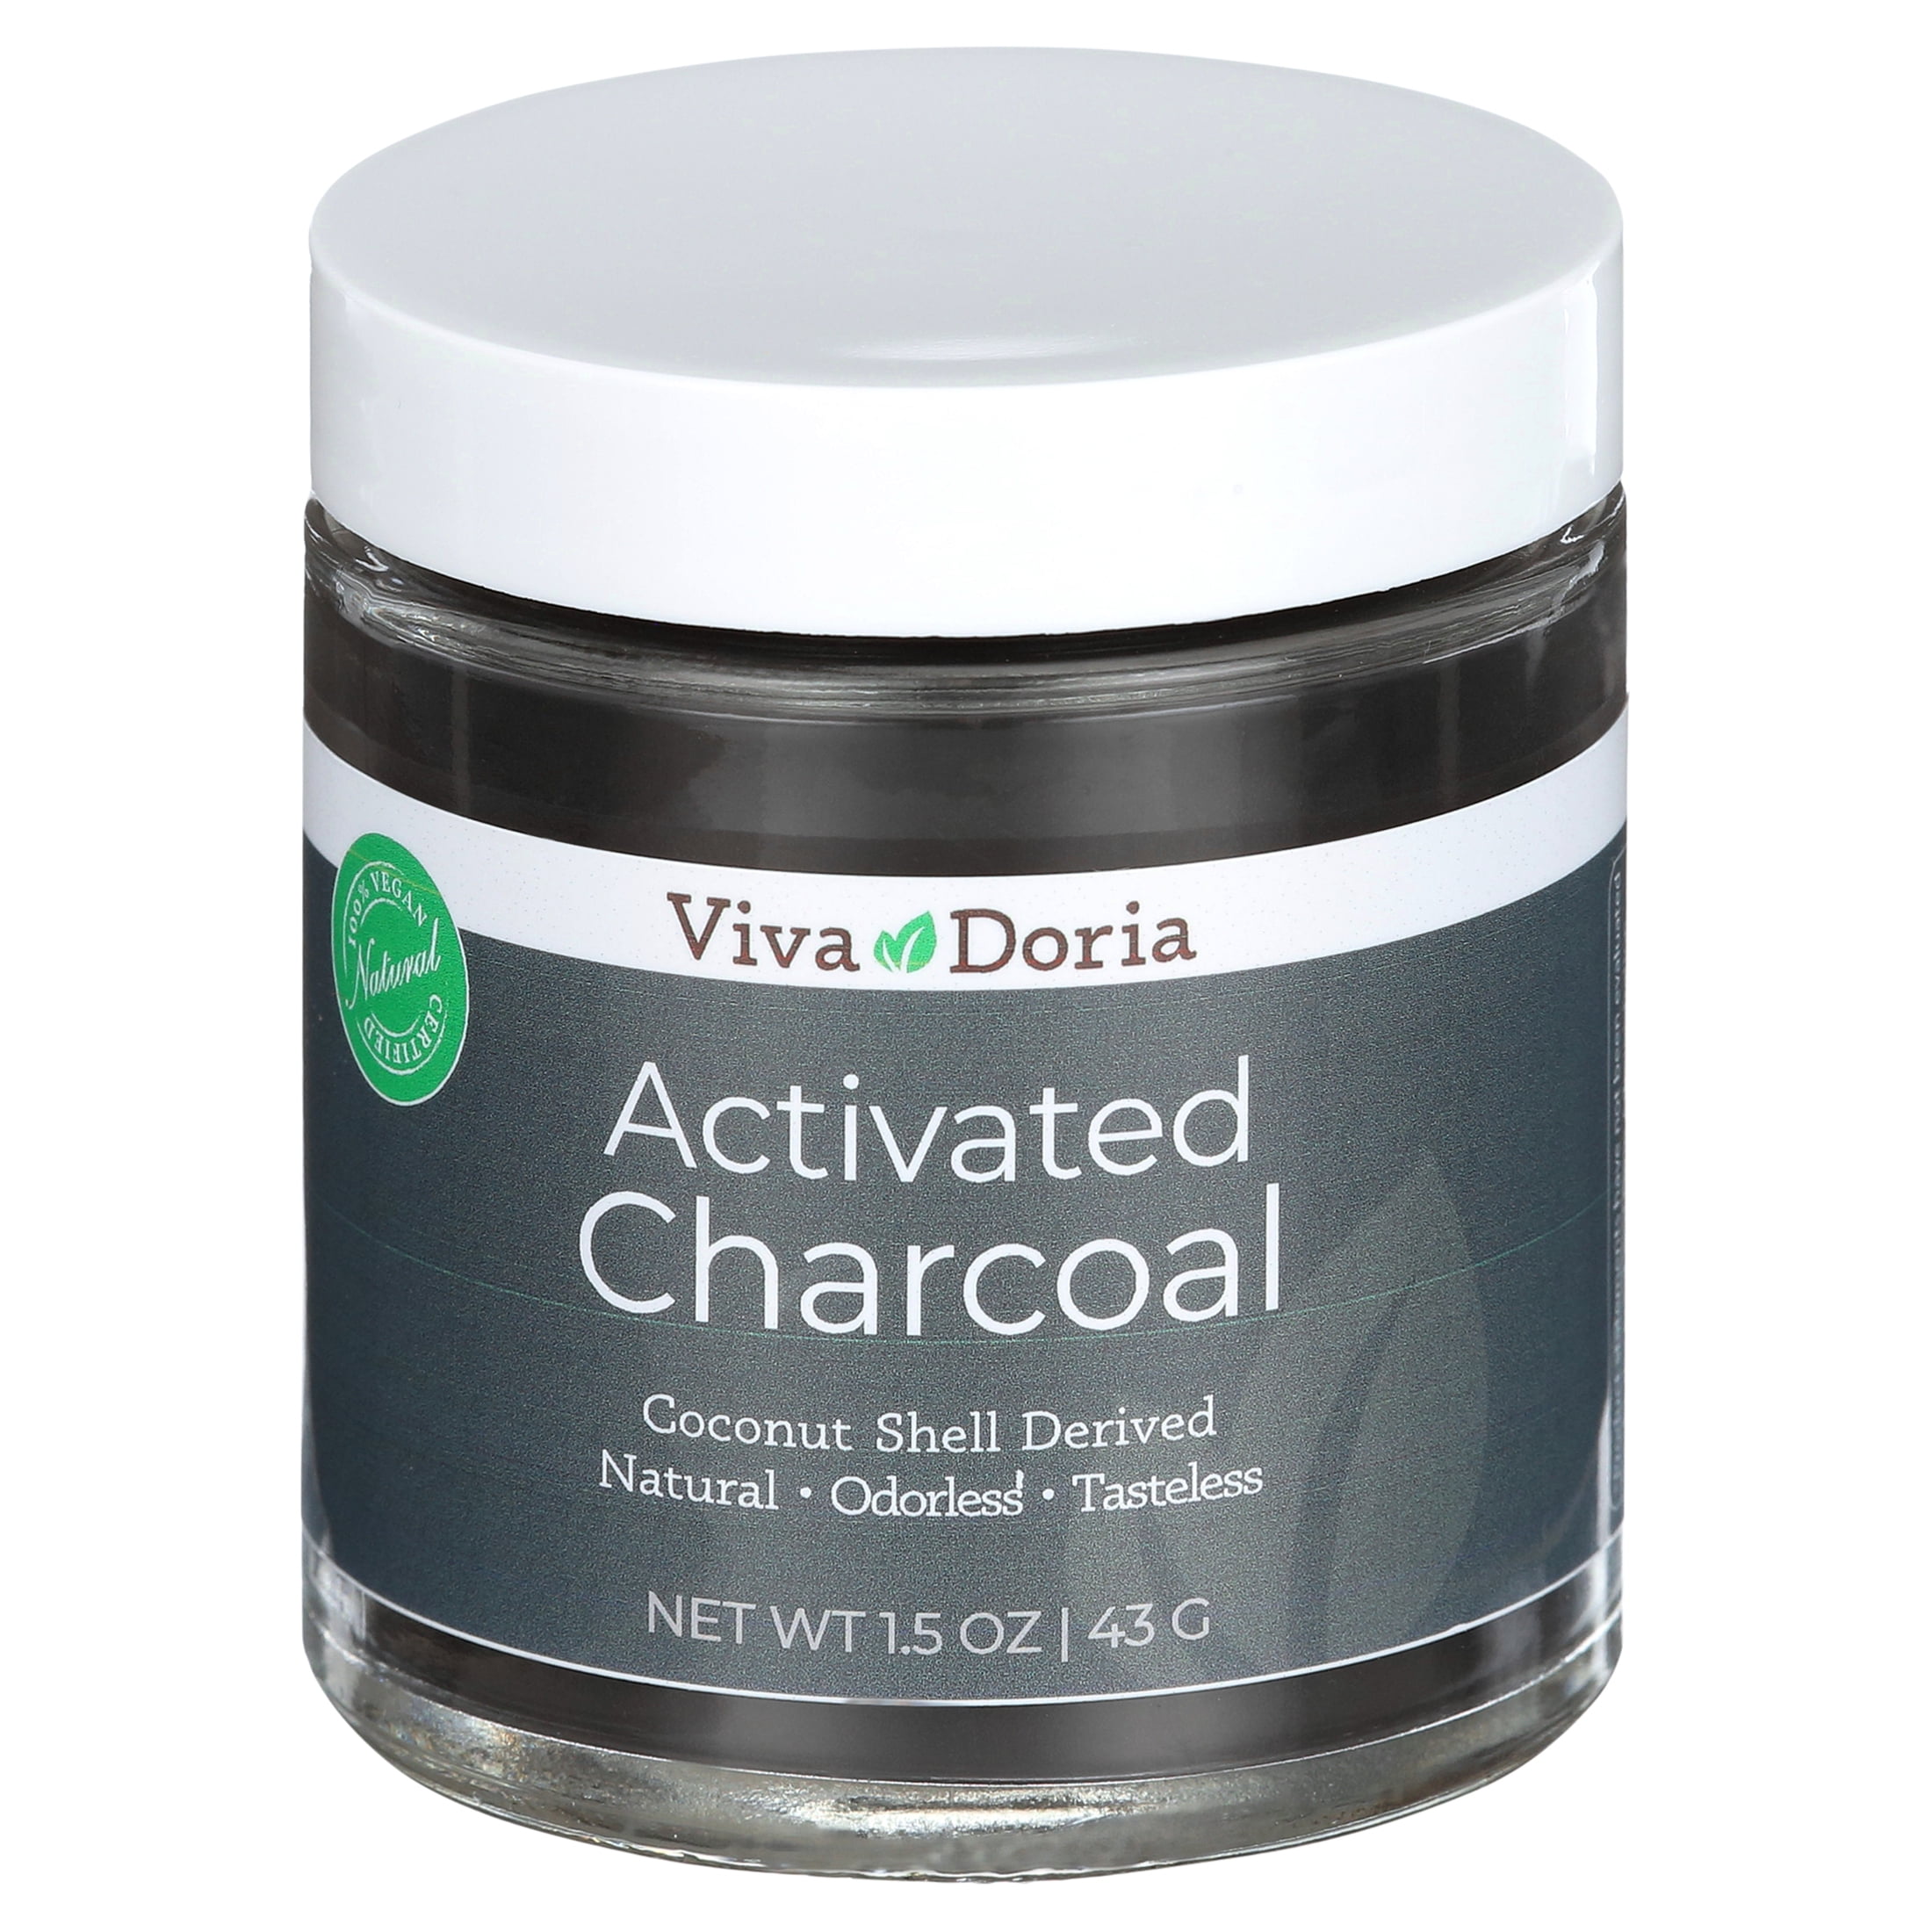 Viva Doria Activated Charcoal Powder 1.2 oz